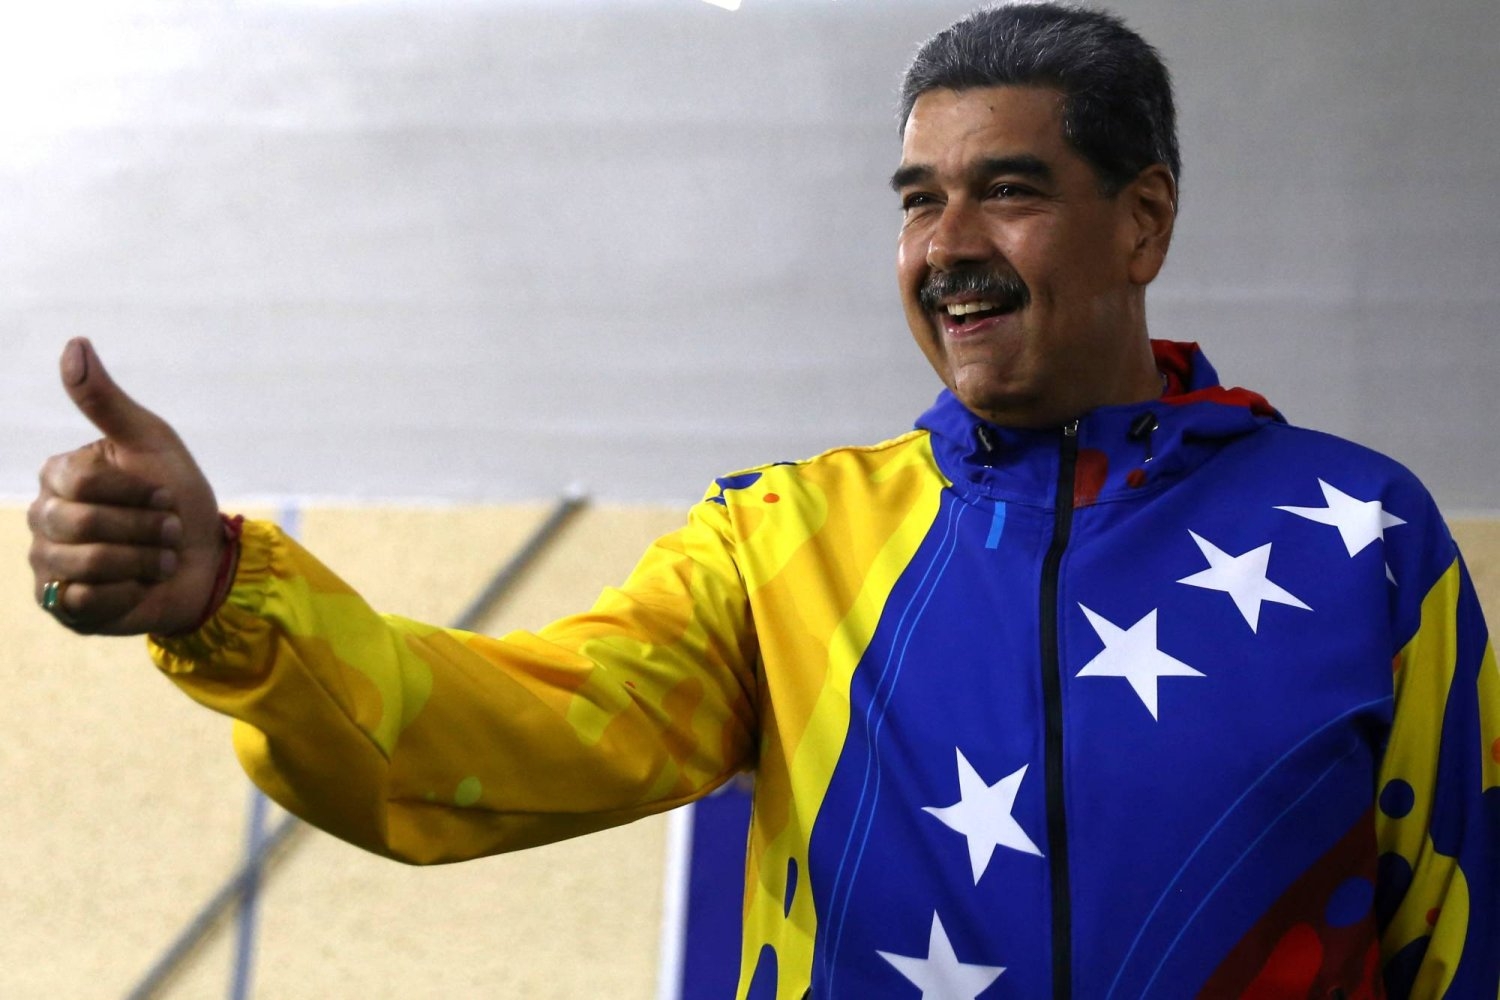 فنزويلا: إعادة انتخاب مادورو لولاية رئاسية ثالثة